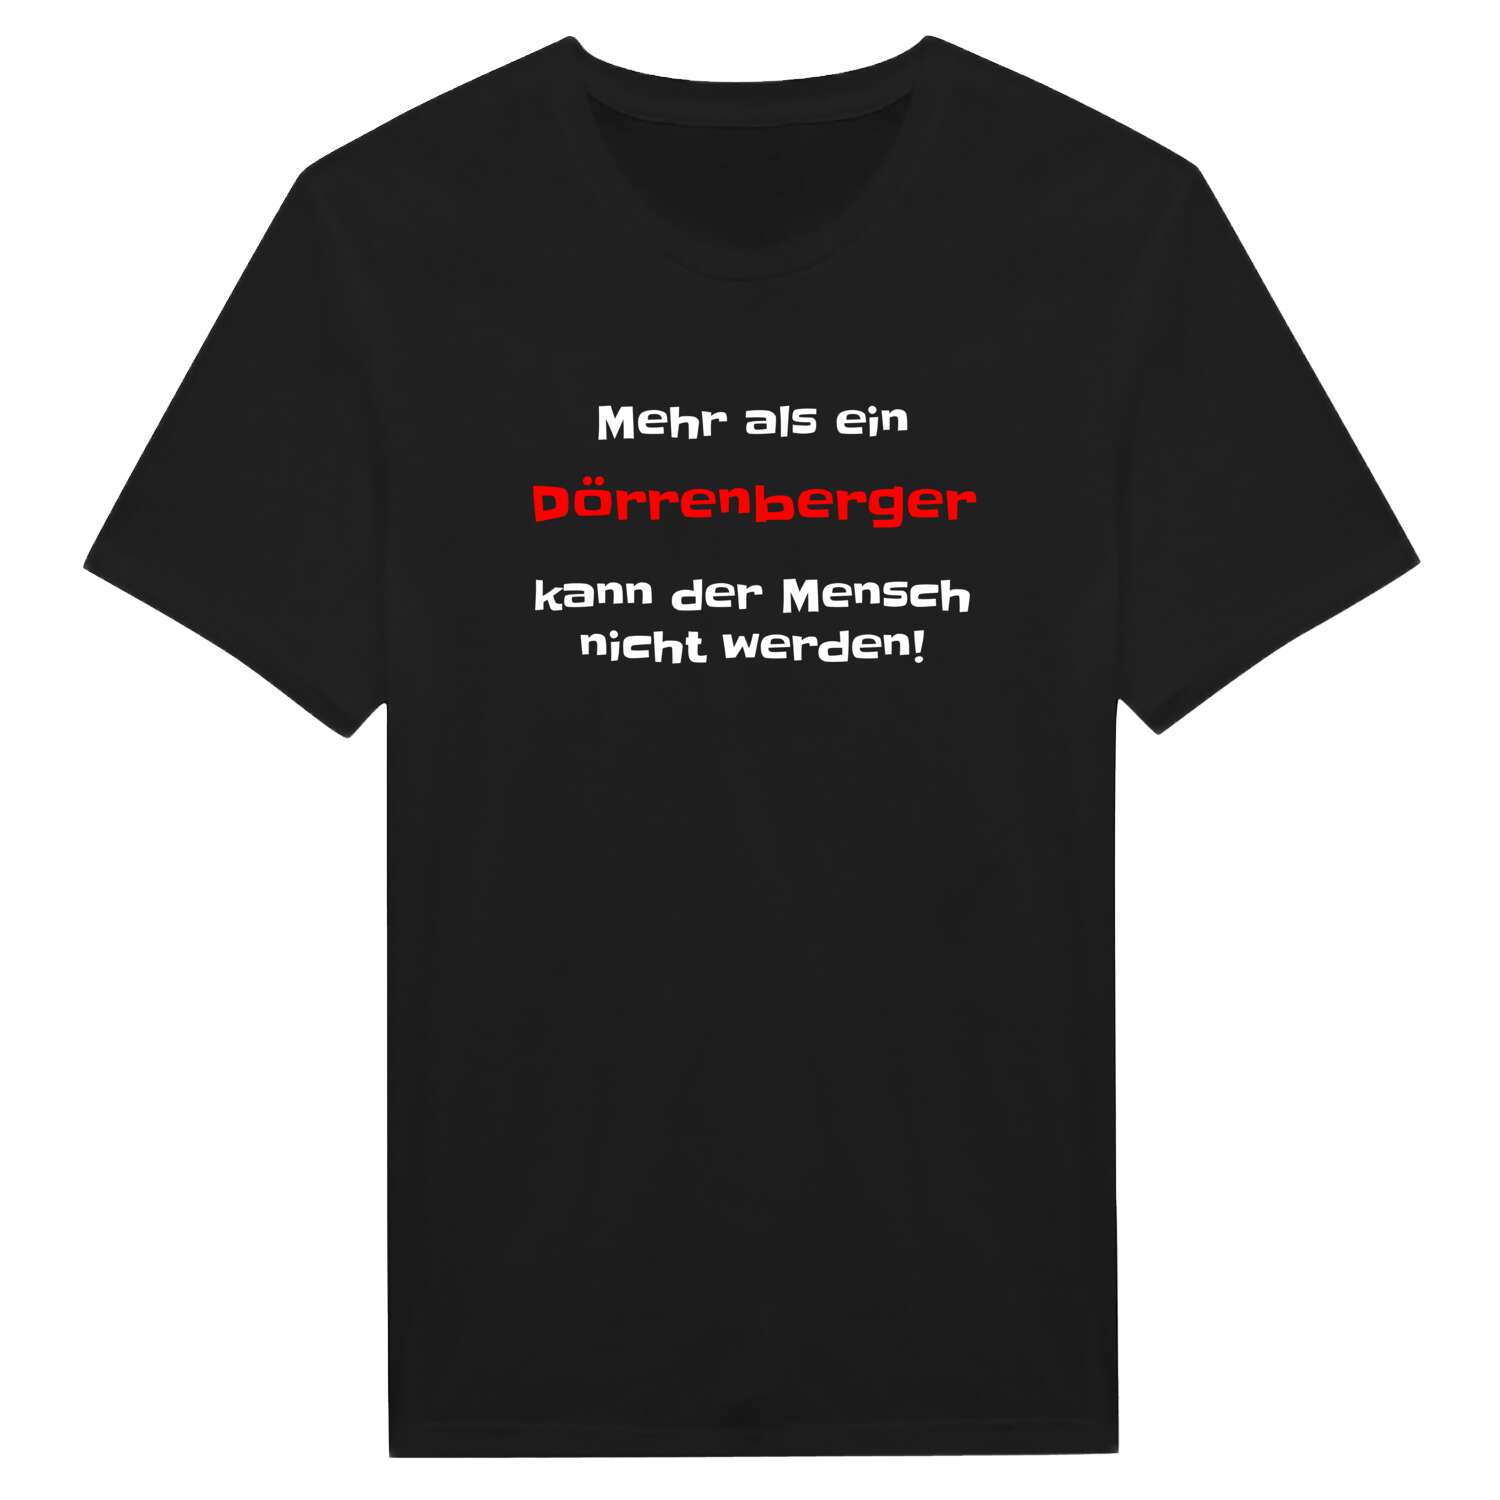 Dörrenberg T-Shirt »Mehr als ein«